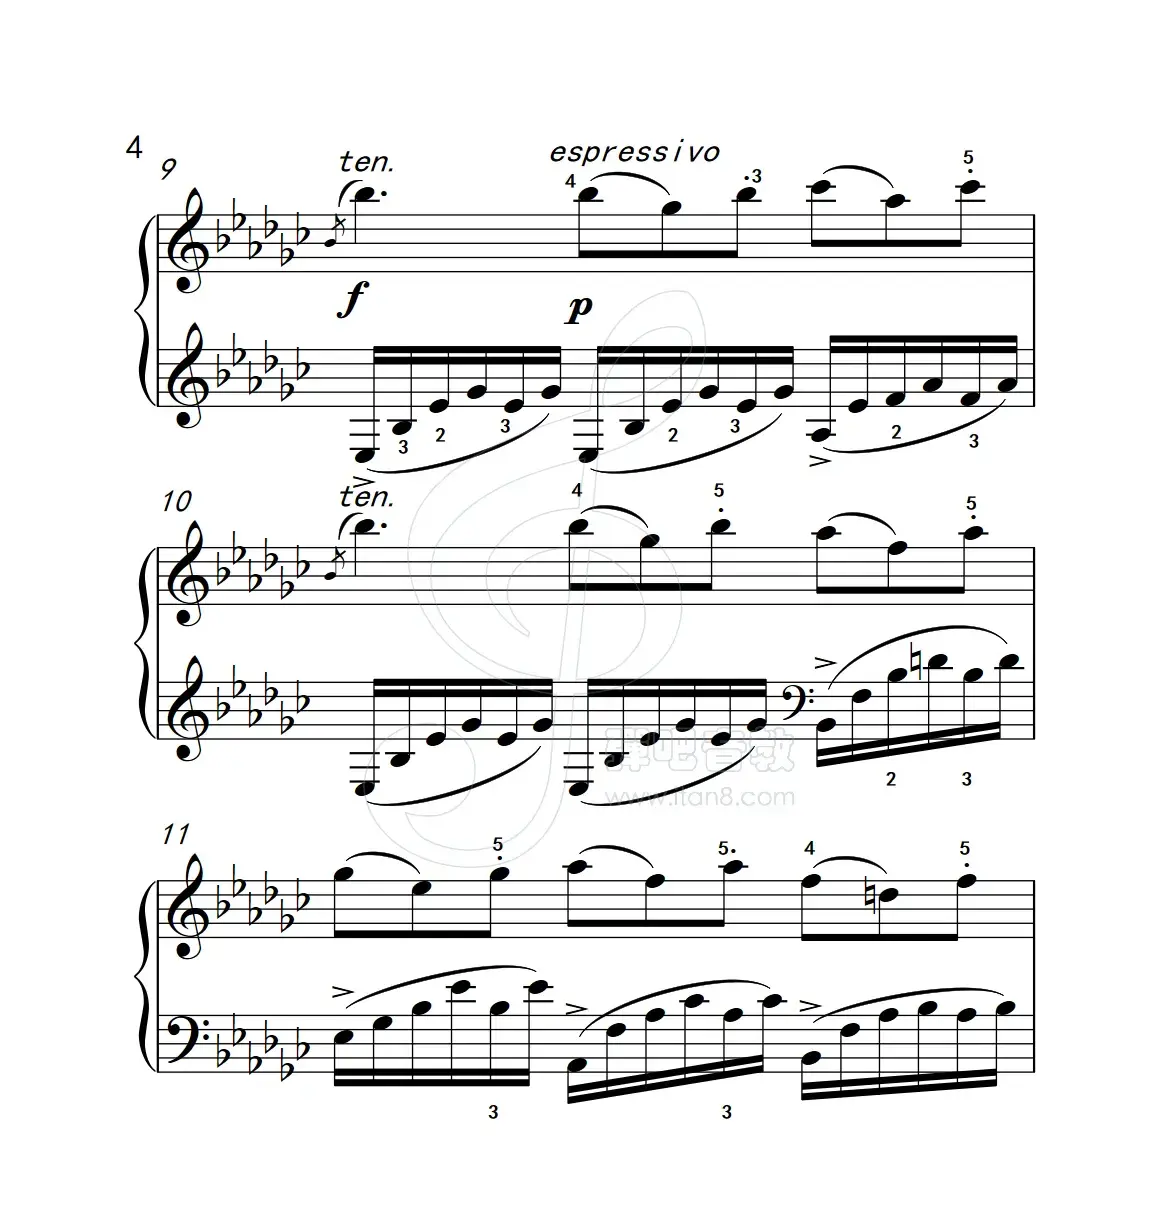 练习曲 31（克拉莫钢琴练习曲60首）